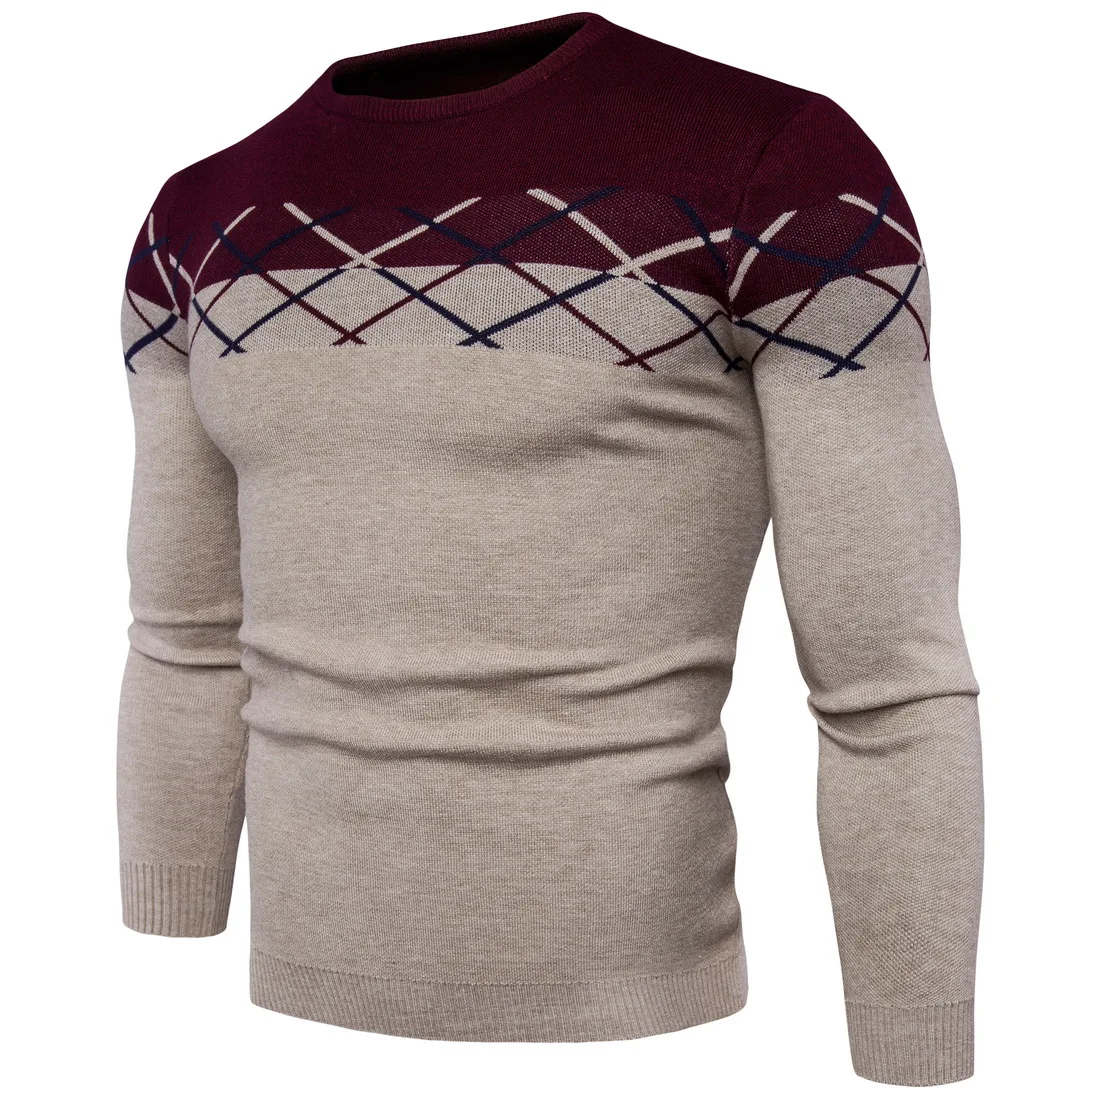 Свитера, пуловеры Для мужчин 2018 мужские брендовые Повседневное тонкий Свитеры для женщин Для мужчин высокое качество плед борьба Цвет